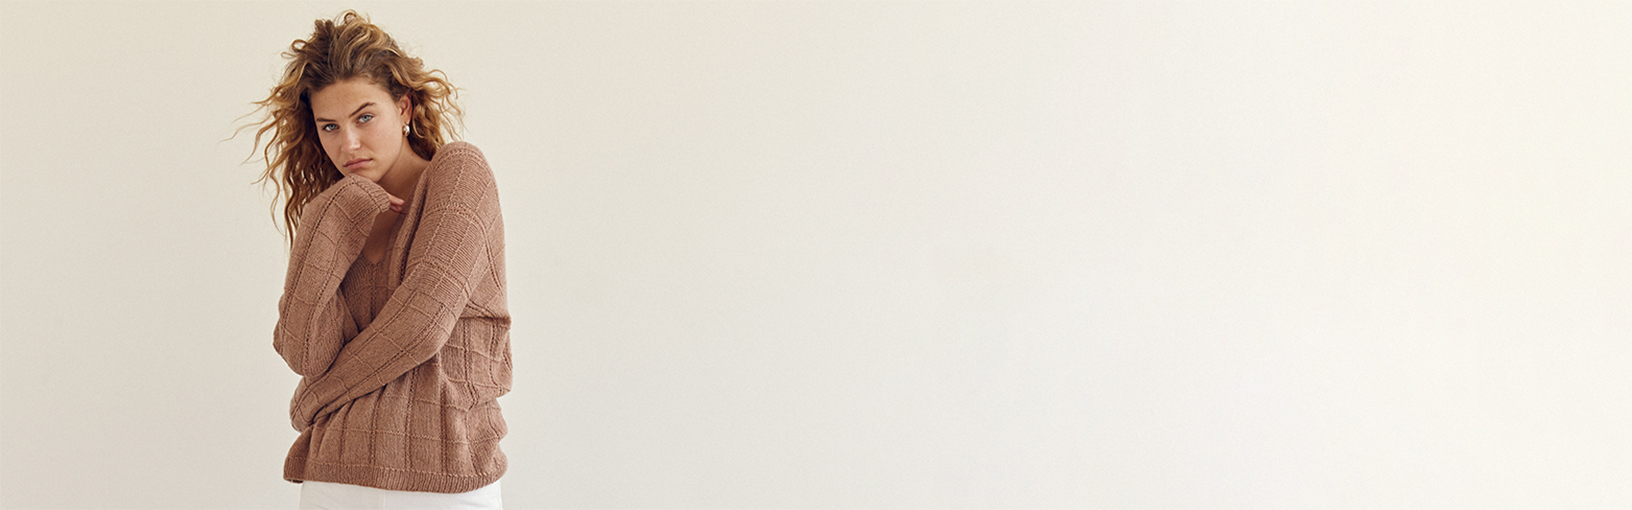 INOVATIVNO, ERGONOMSKO - NAJVIŠI KVALITET Lana Grossa Igle | Kružno pletenje iglice | Dizajn drveta Quattro